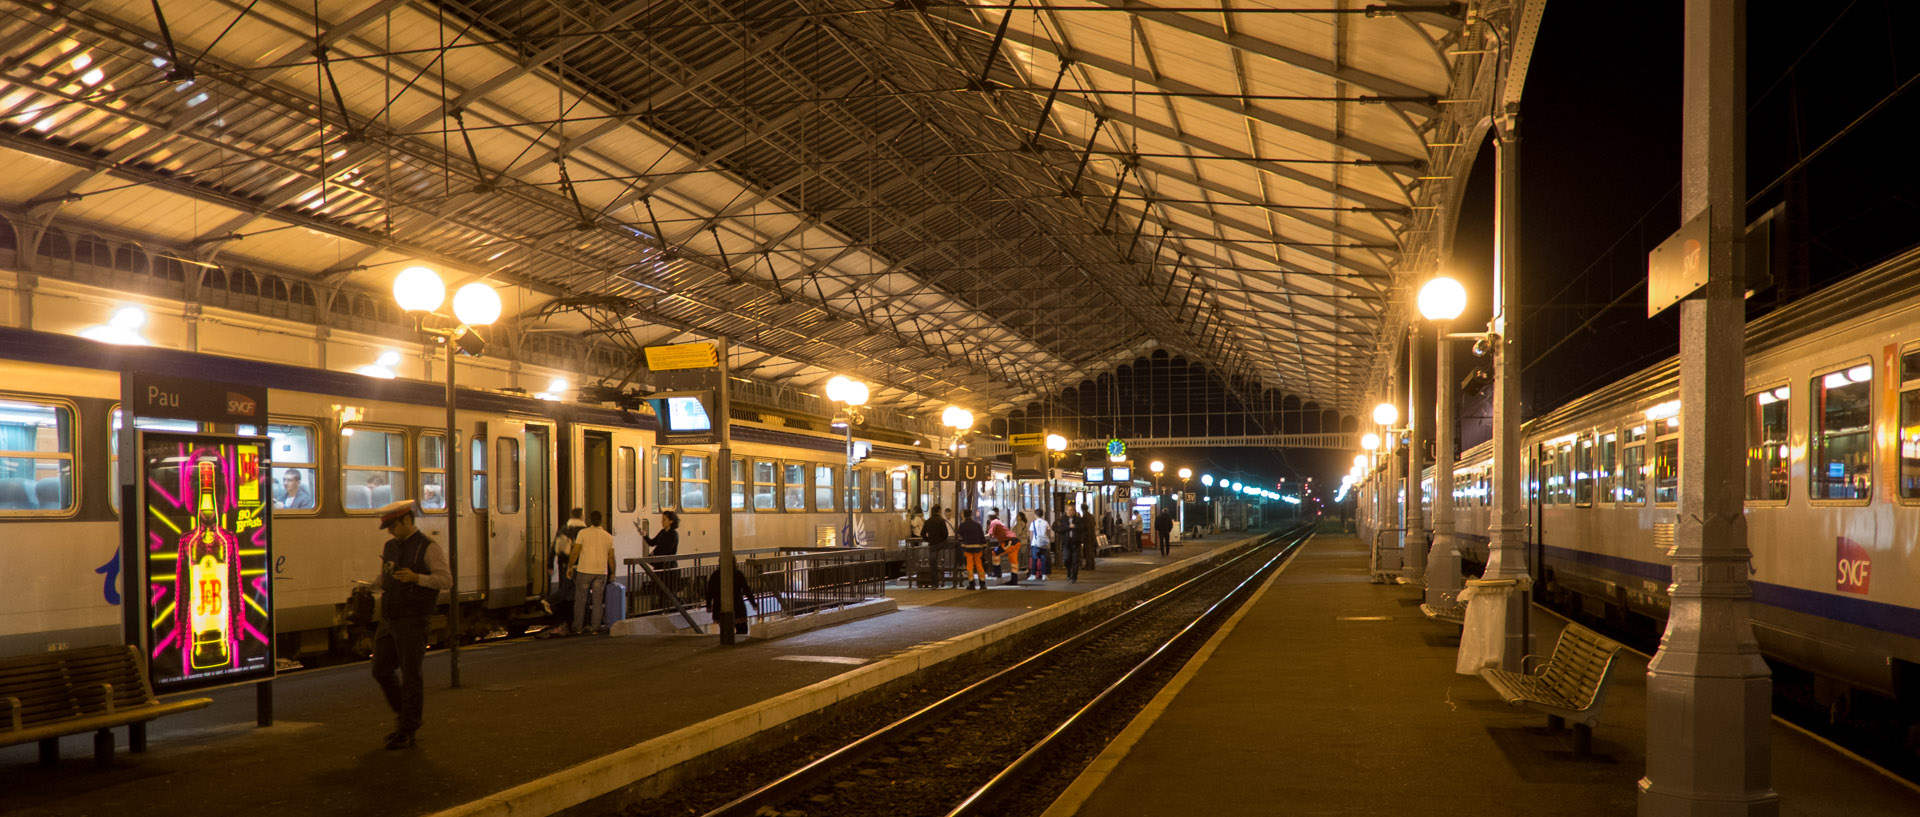 La gare de Pau.